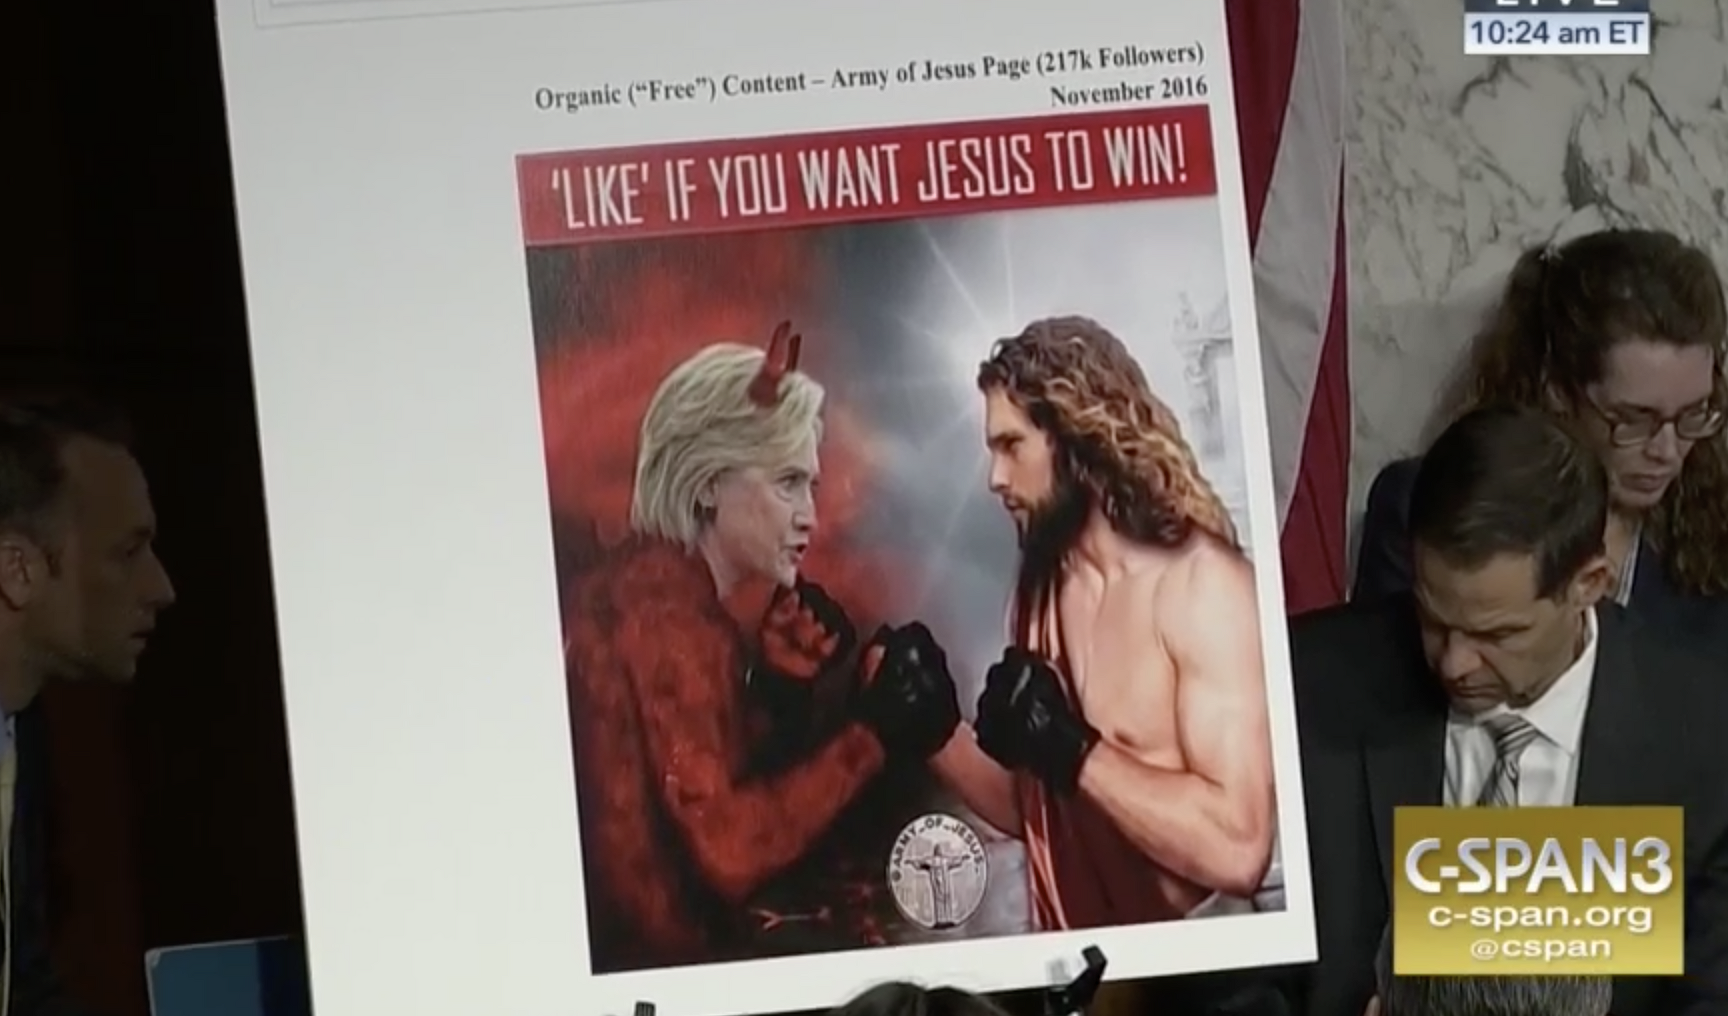 <p>Реклама в основном была направлена против кандидата от демократической партии Хиллари Клинтон.&nbsp;&laquo;Жми лайк, если хочешь, чтобы Иисус победил&raquo;, &mdash;&nbsp;написано на изображении.&nbsp;</p>